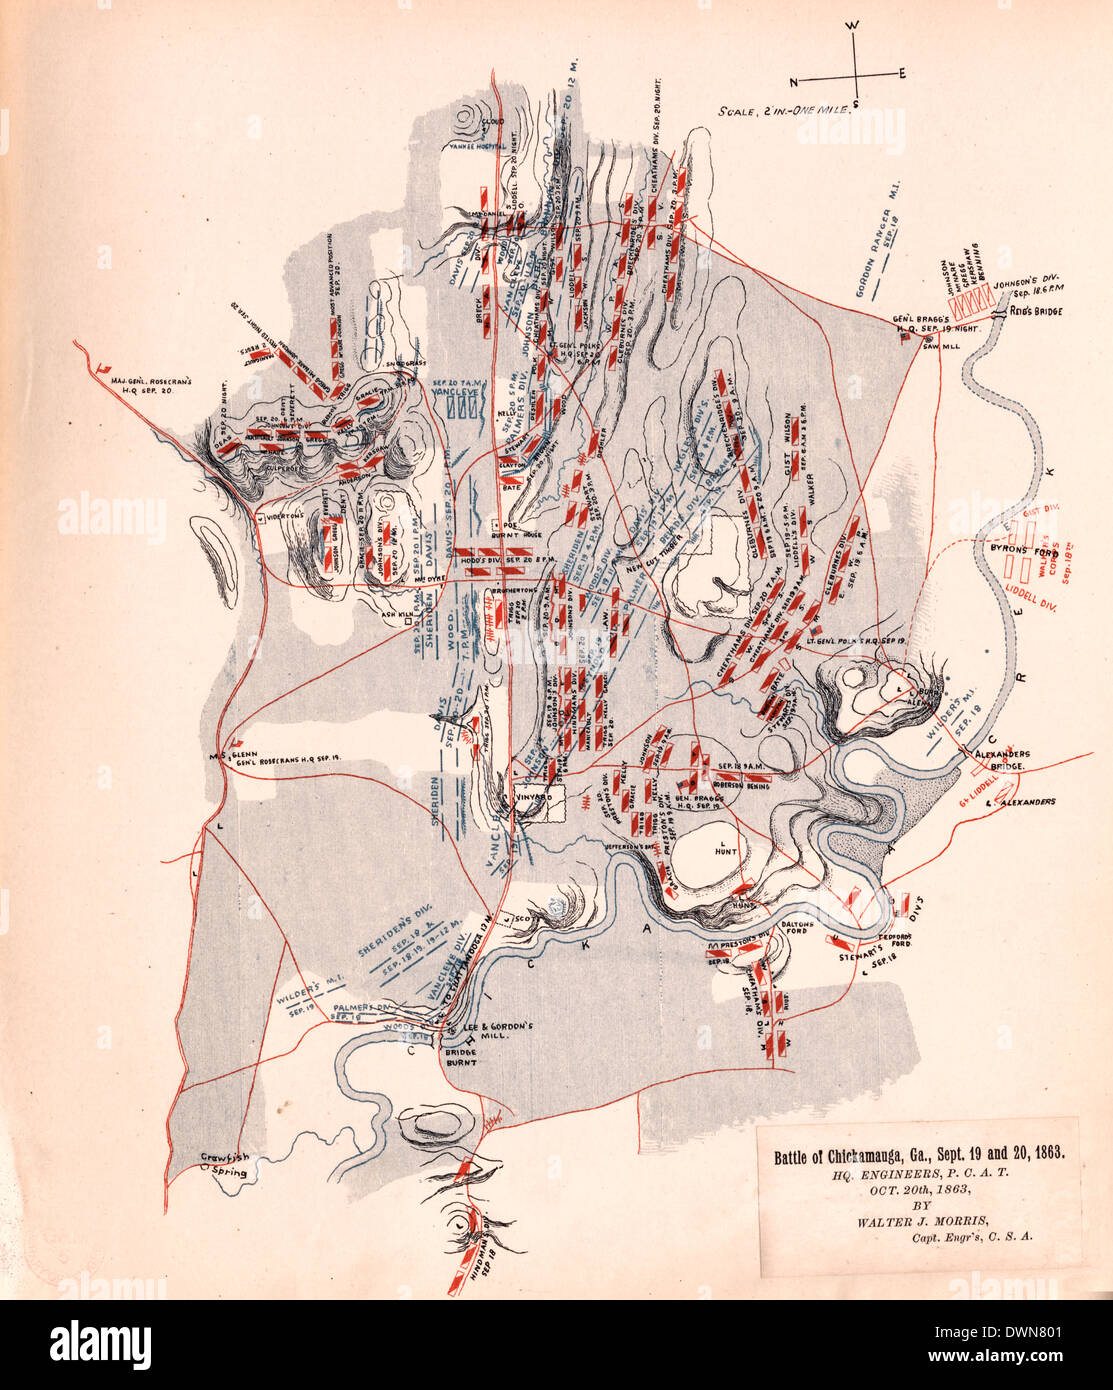 Landkarte - Schlacht von Chickamauga, Georgia, September 19 und 20, 1863 / USA Bürgerkrieg Stockfoto